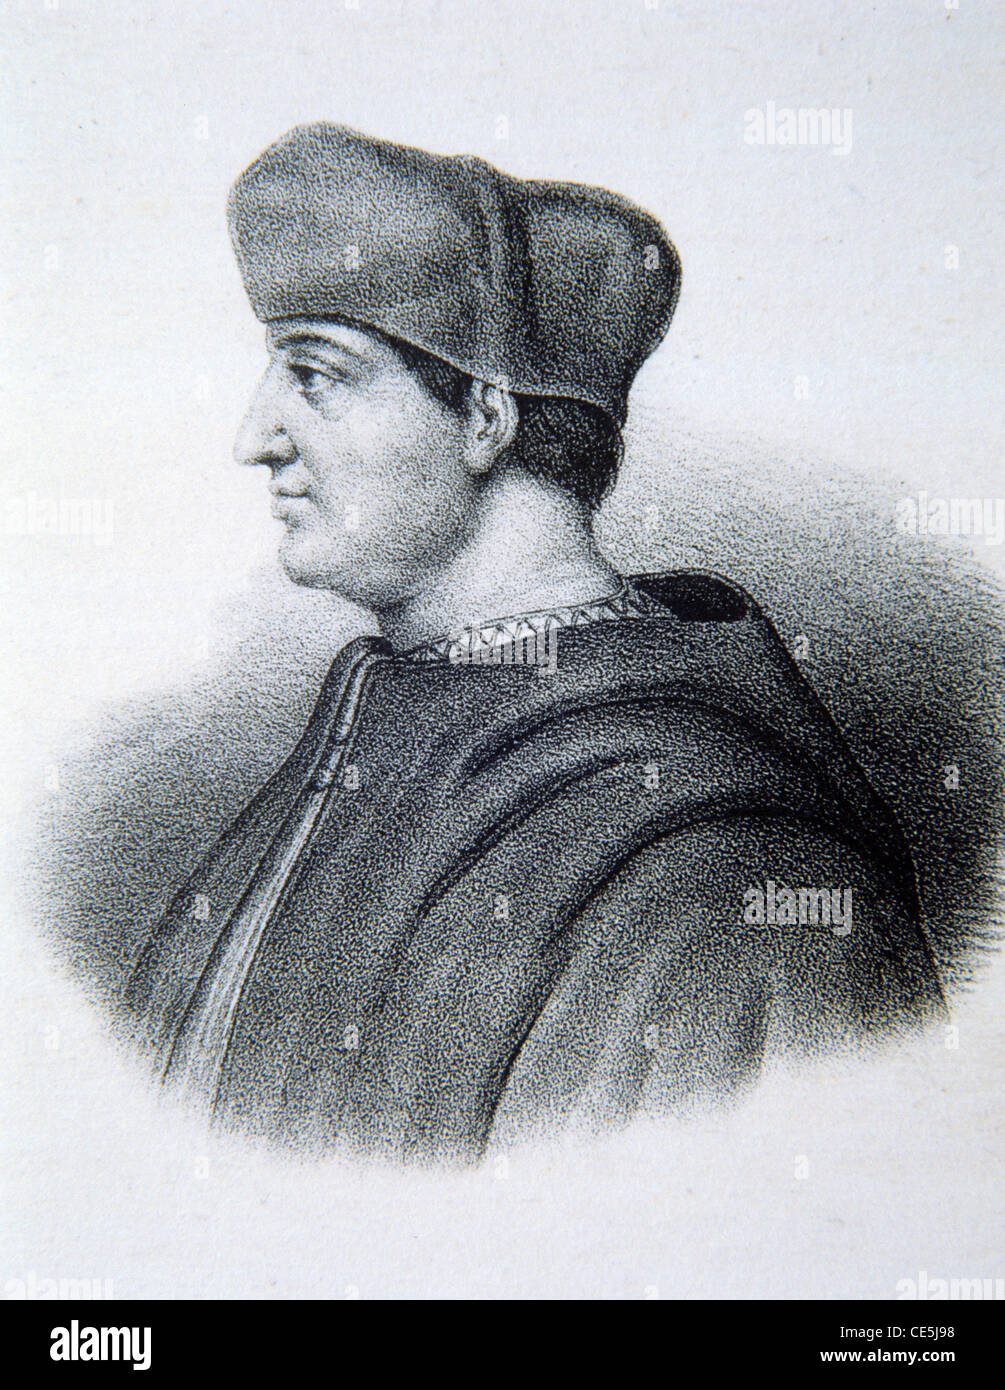 Portrait de Georges d'Amboise, Georges d'Amboise ou Cardinal d'Amboise, Cardinal et Archevêque de Rouen. Illustration ancienne ou gravure Banque D'Images